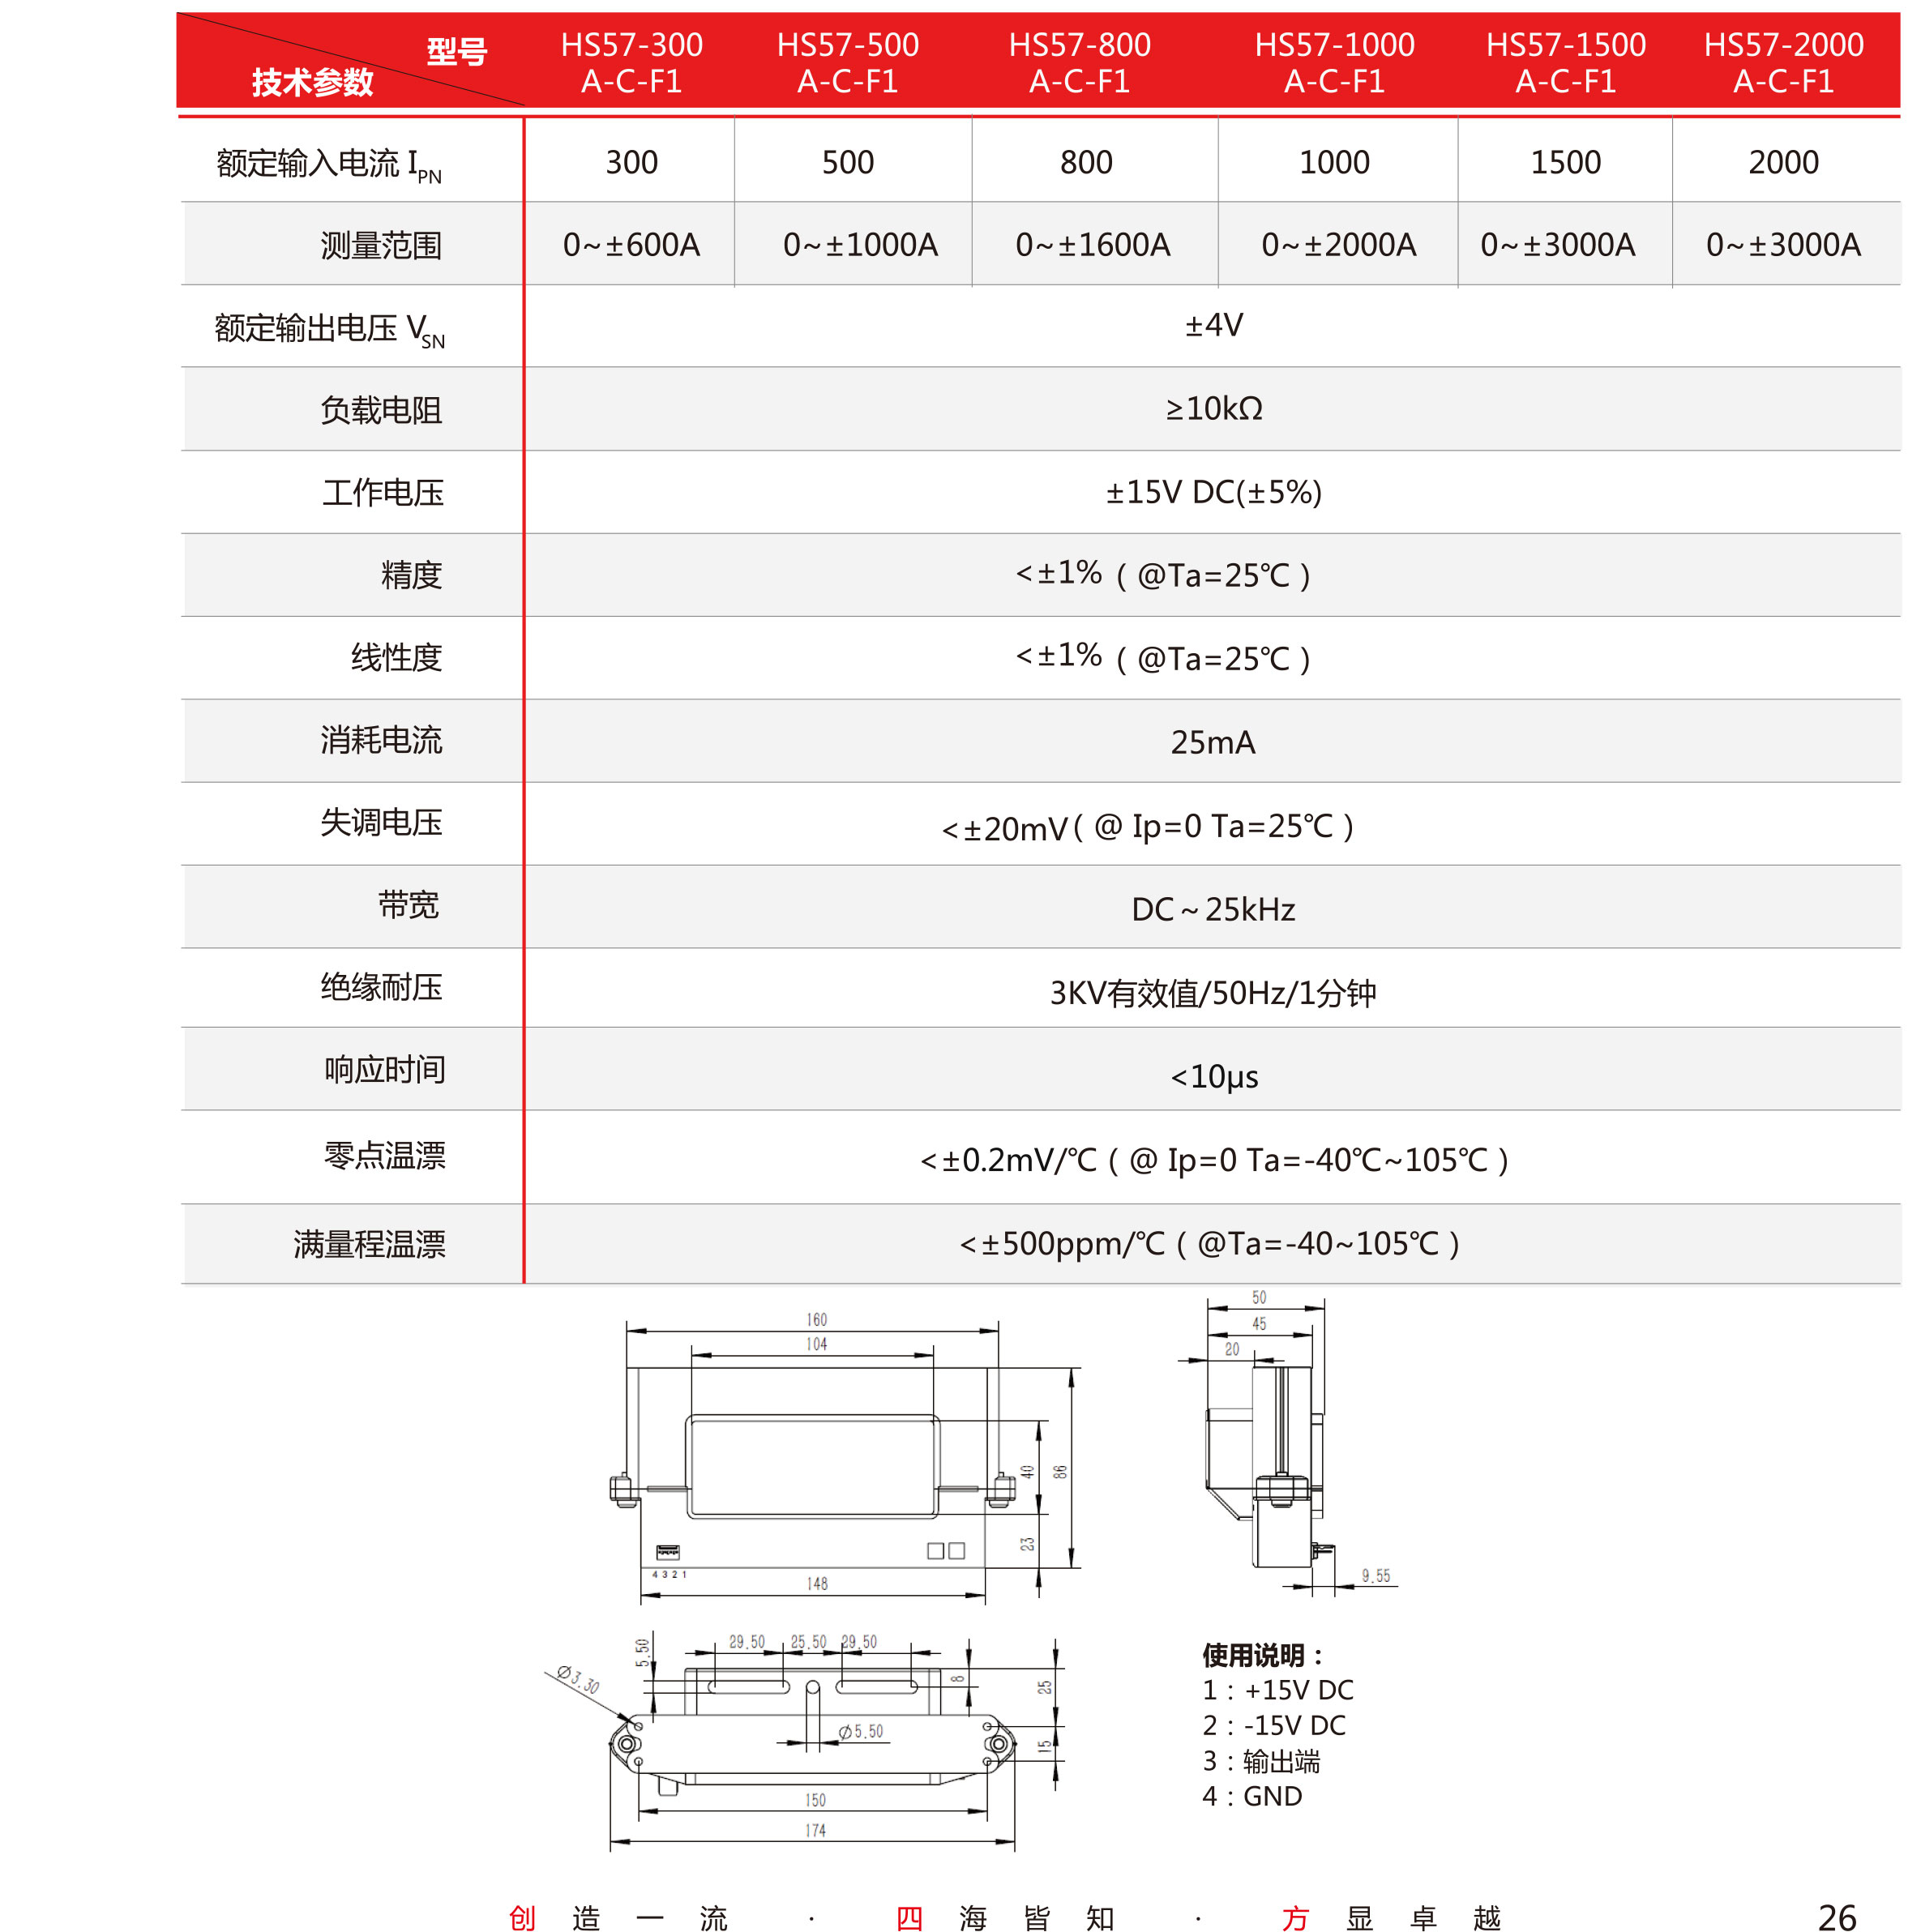 5传感器-V5-2019-北京-单页-27.jpg